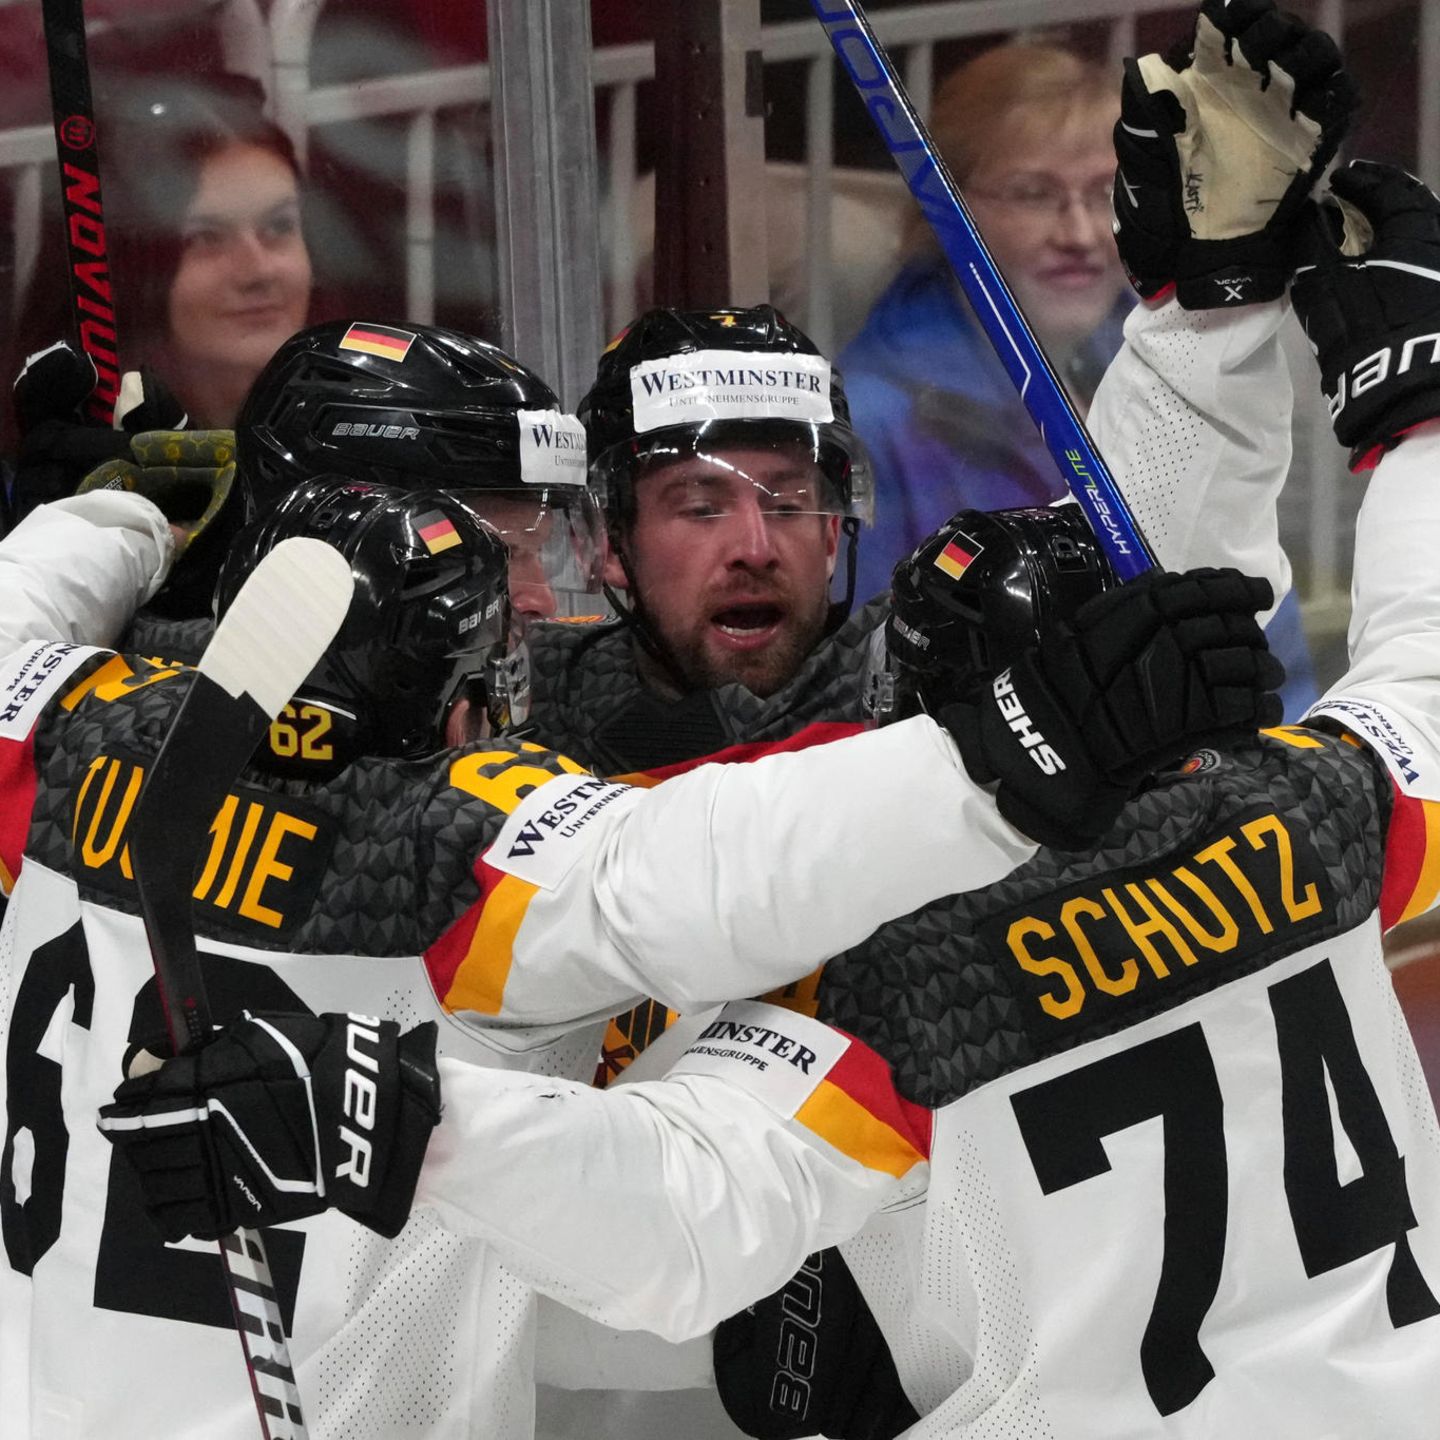 Eishockey-WM in Riga Deutsches Team zieht ins Halbfinale ein STERN.de